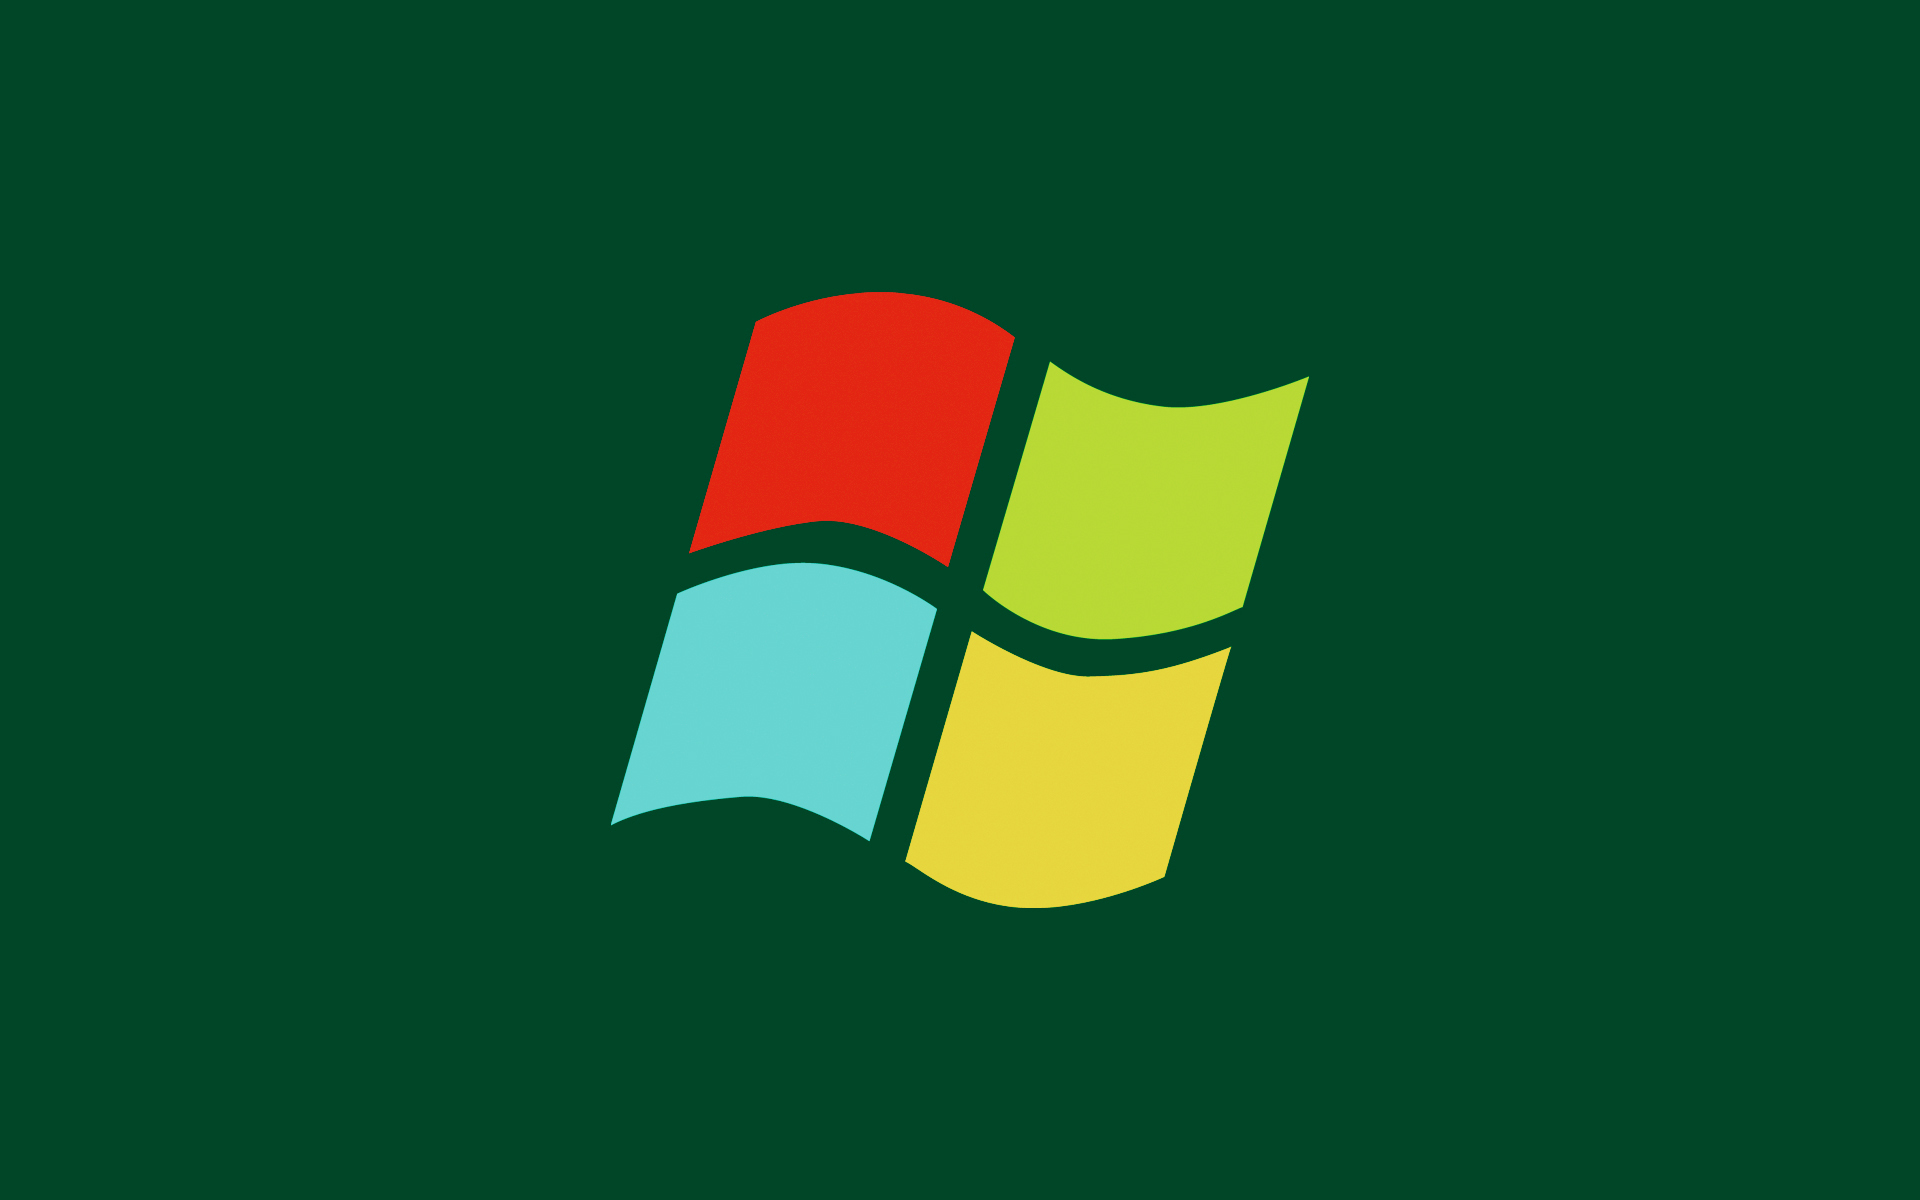 Windows Logo Wallpaper Stock Photos